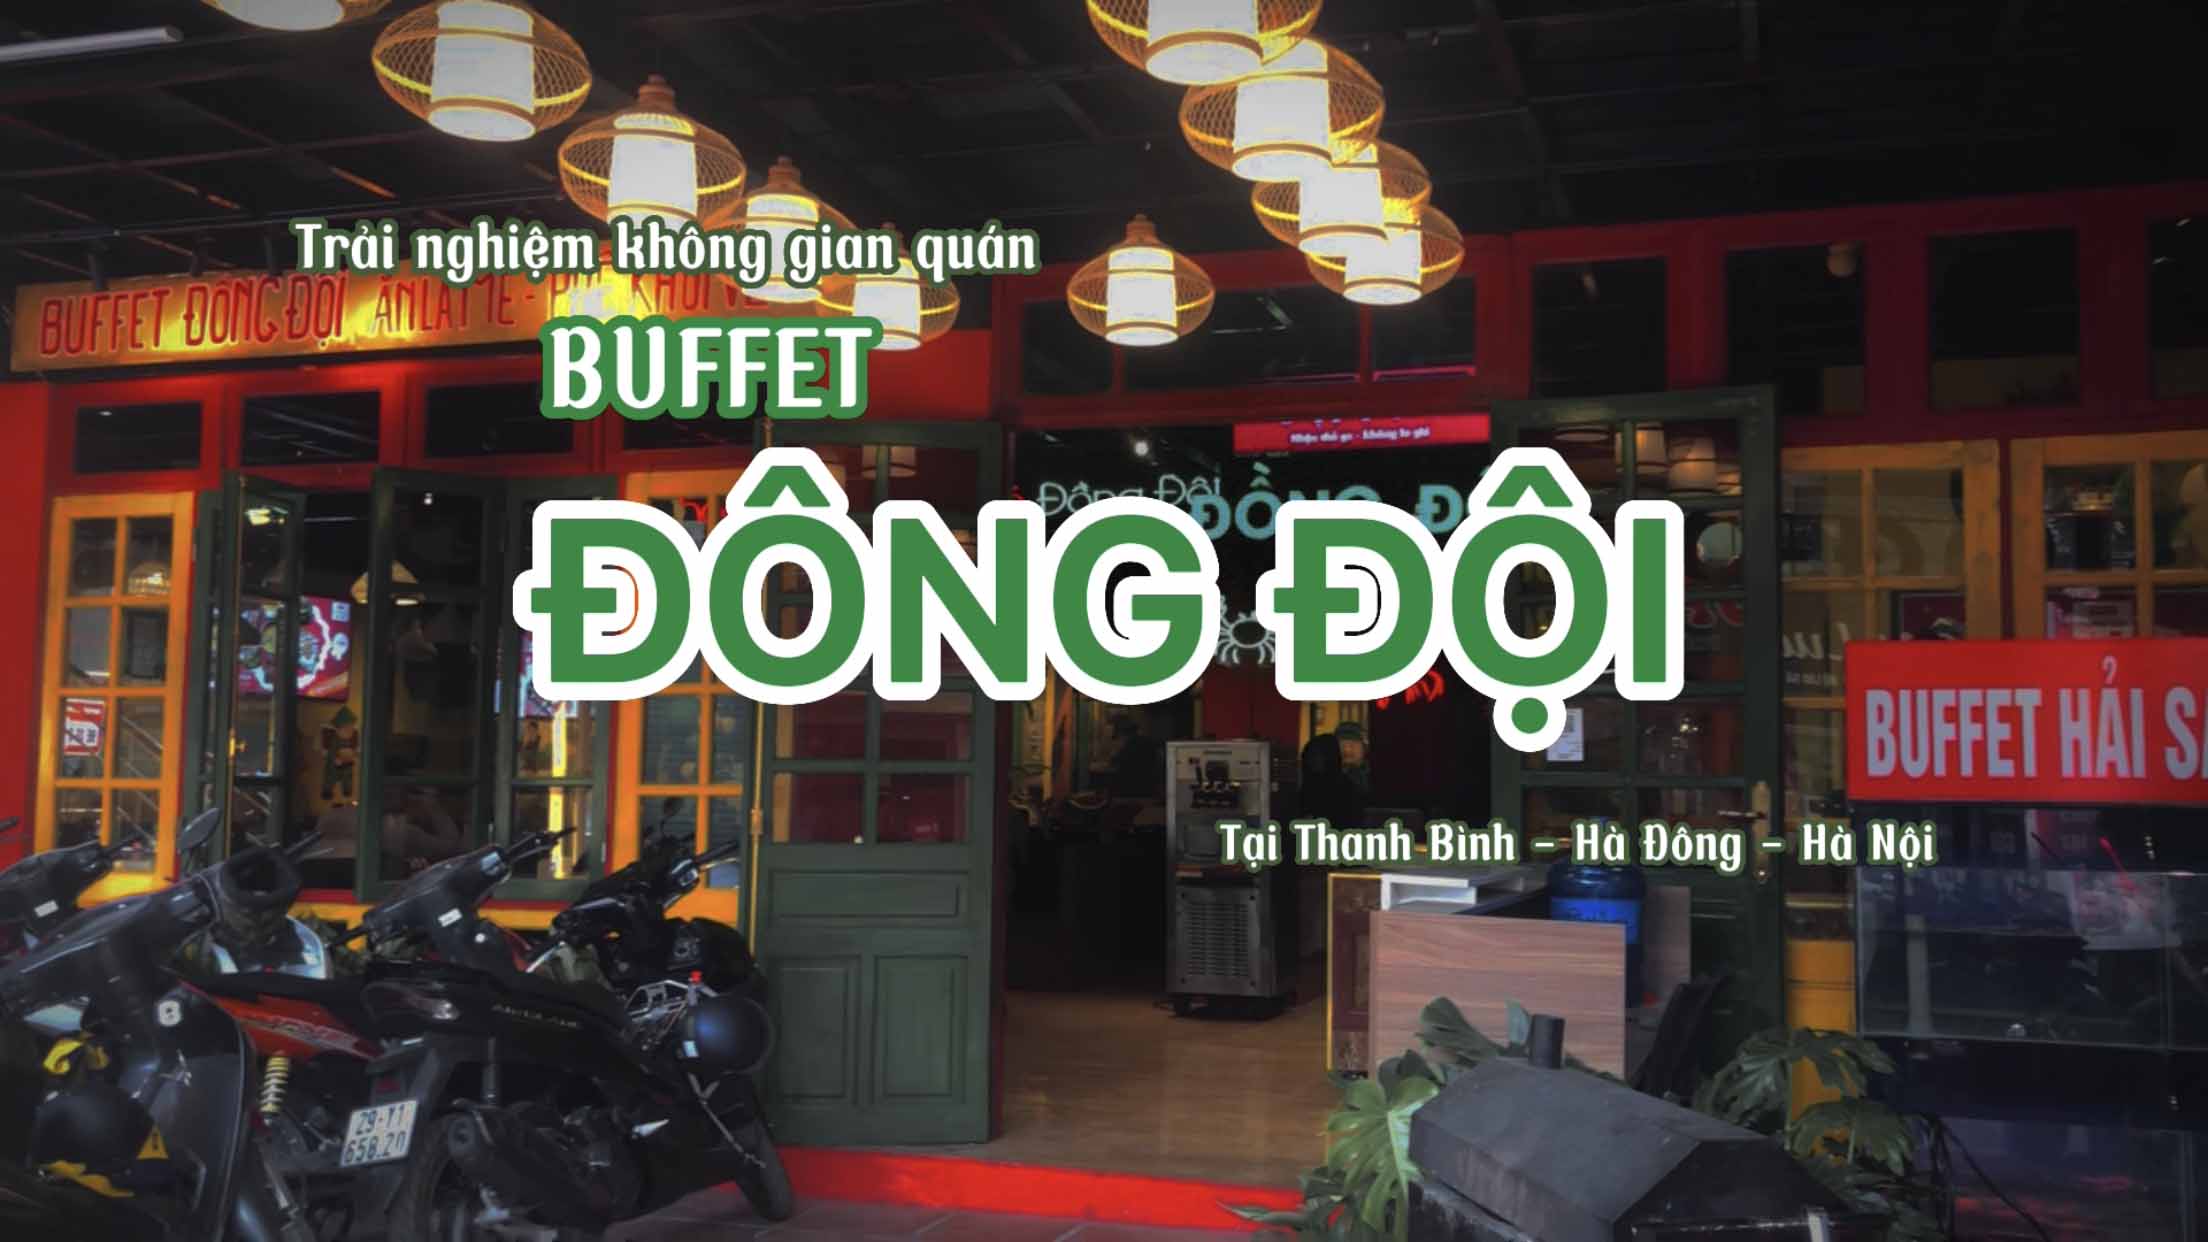 Trải nghiệm không gian quán BUFFET ĐỒNG ĐỘI tại Thanh Bình, Hà Đông, Hà Nội